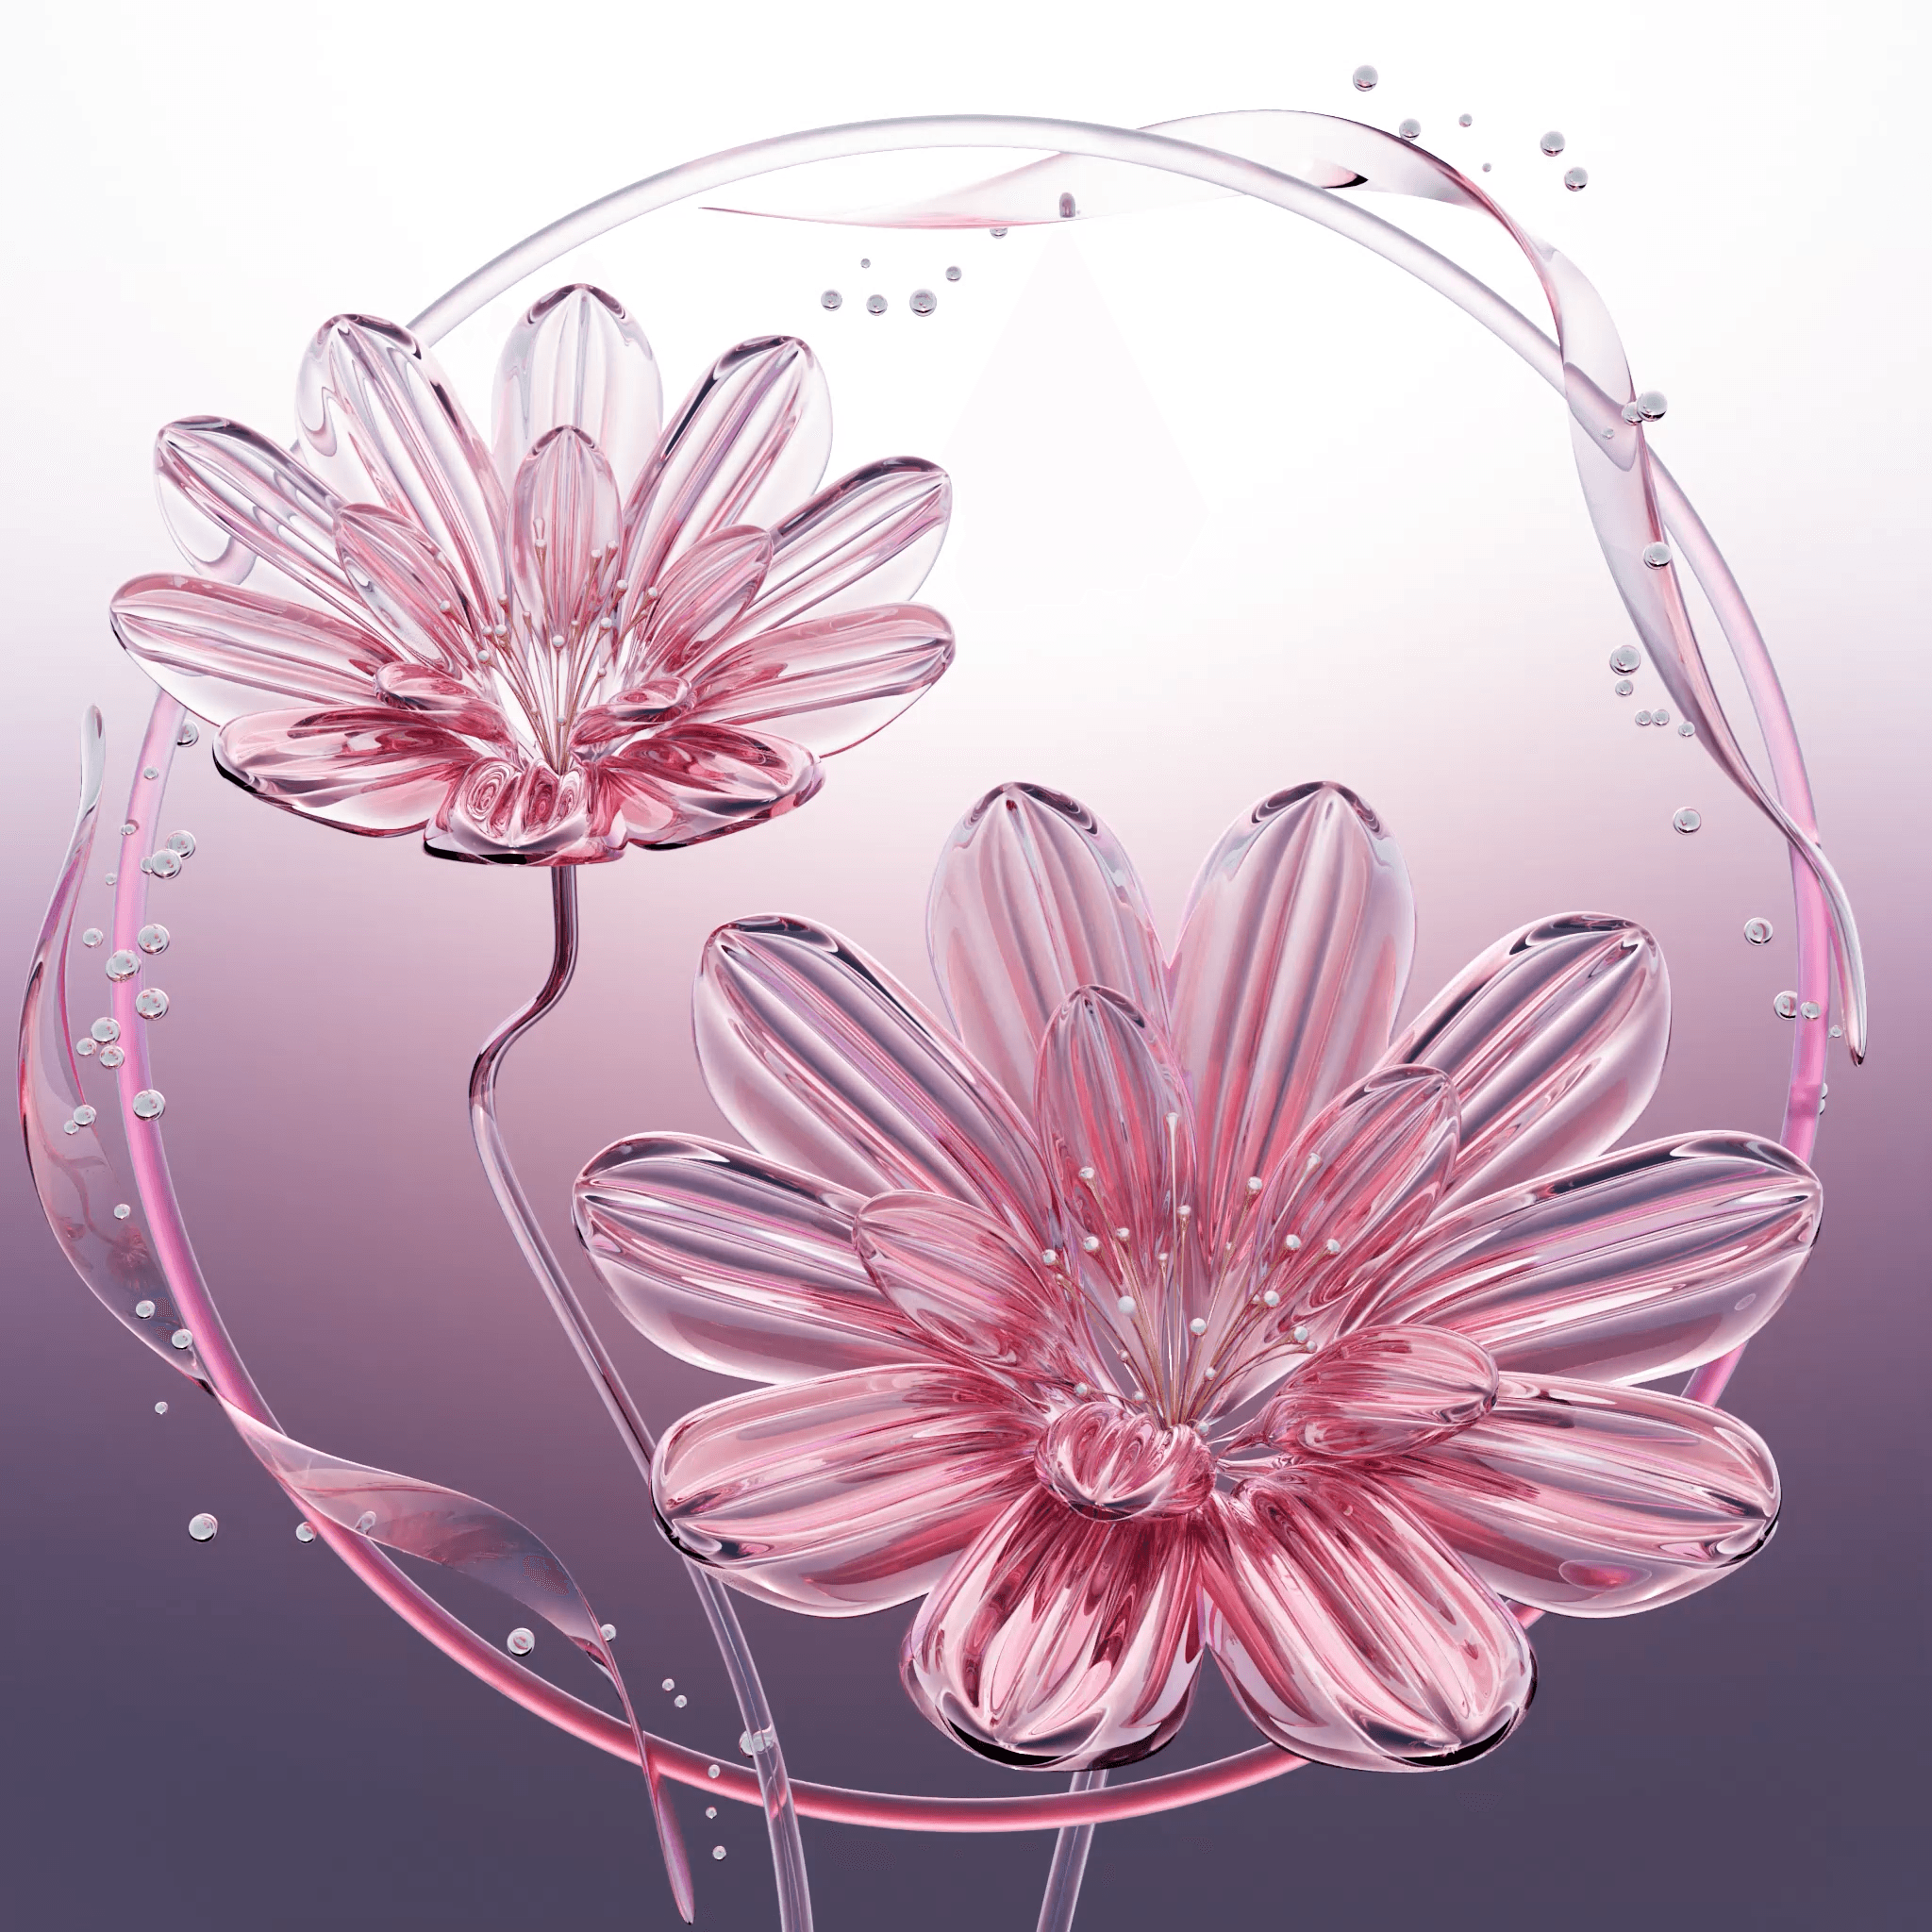 Pellucid Petals #06 - Rosé